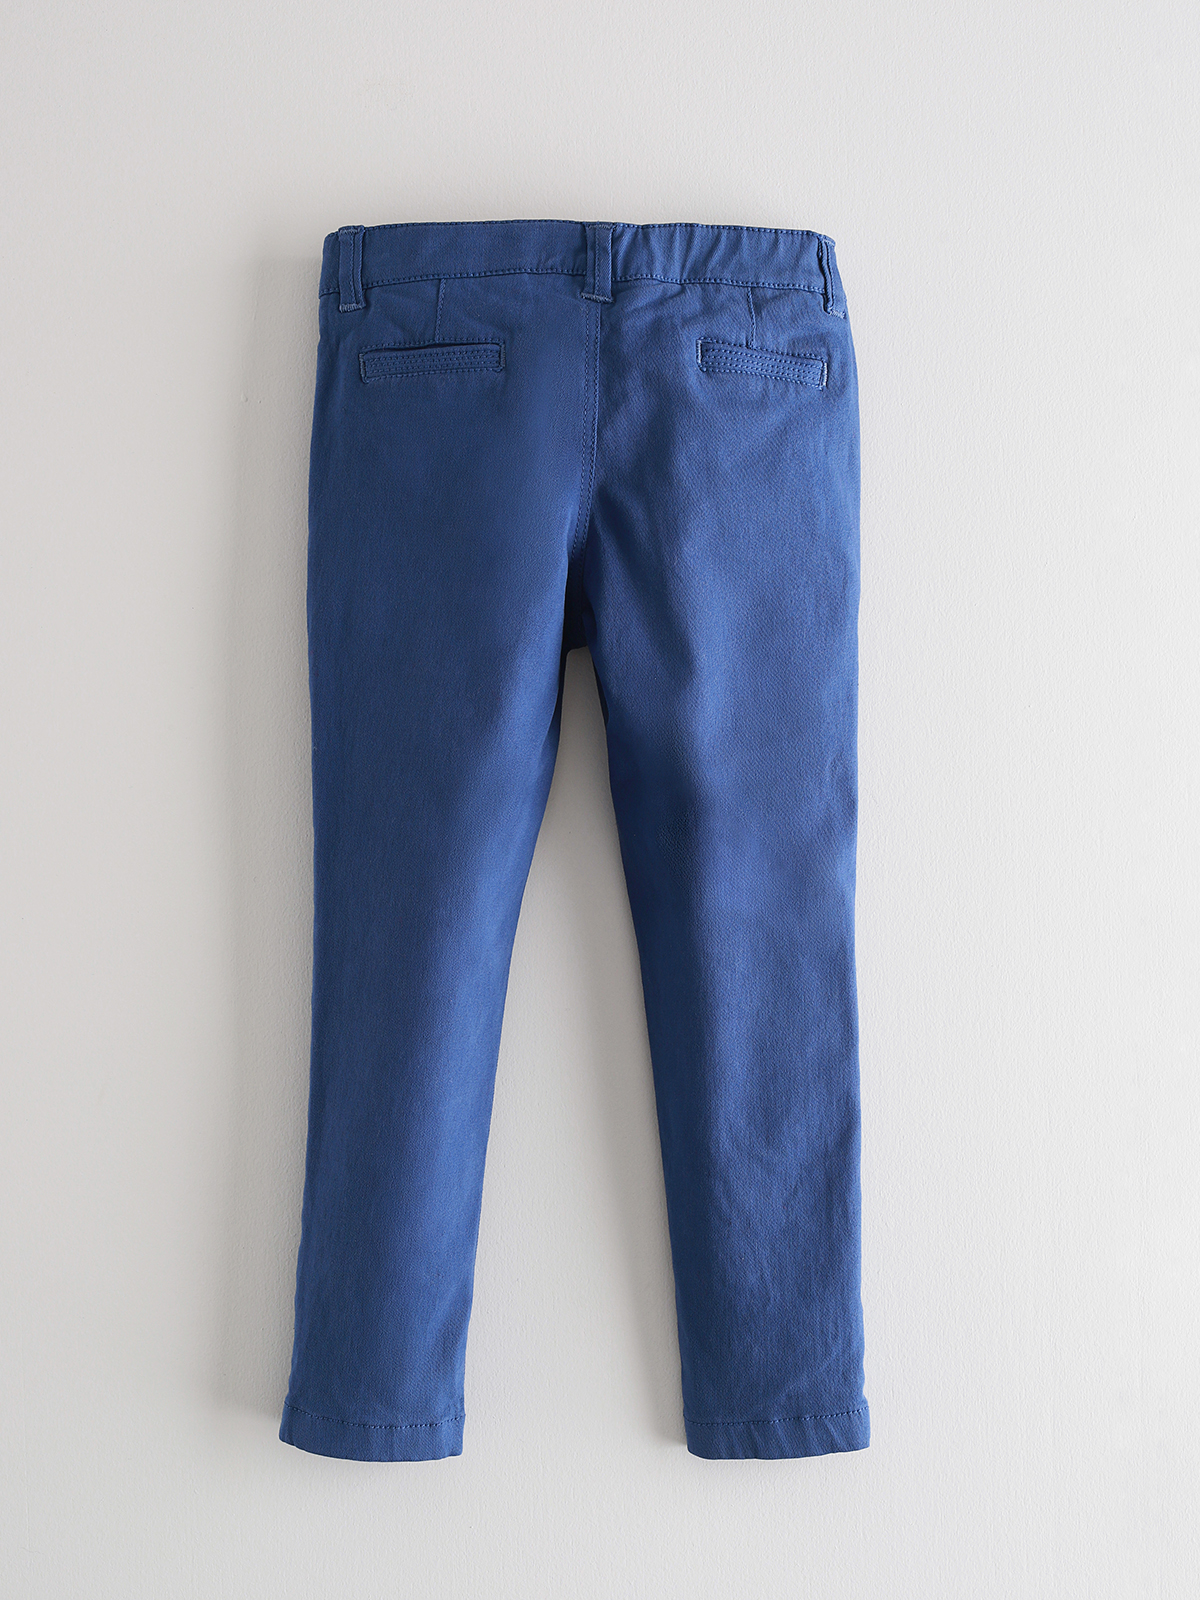 Pantalon loneta azulon Boy Trousers | NANOS